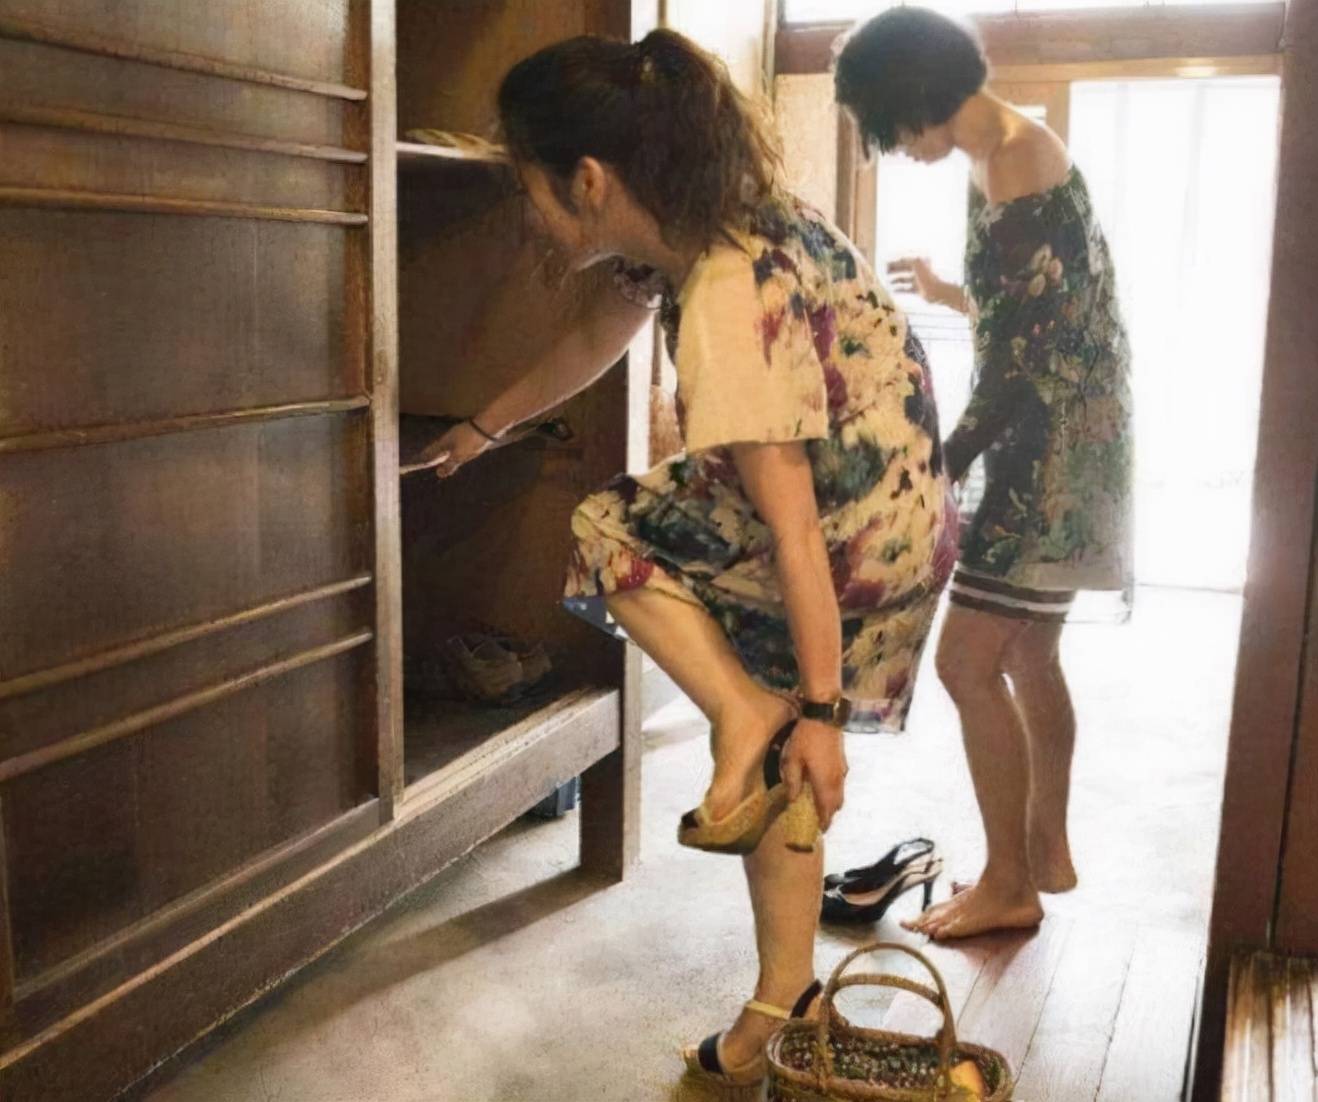  原创 到日本人家里造访，进门全都要脱鞋，假如有脚臭该怎么办？